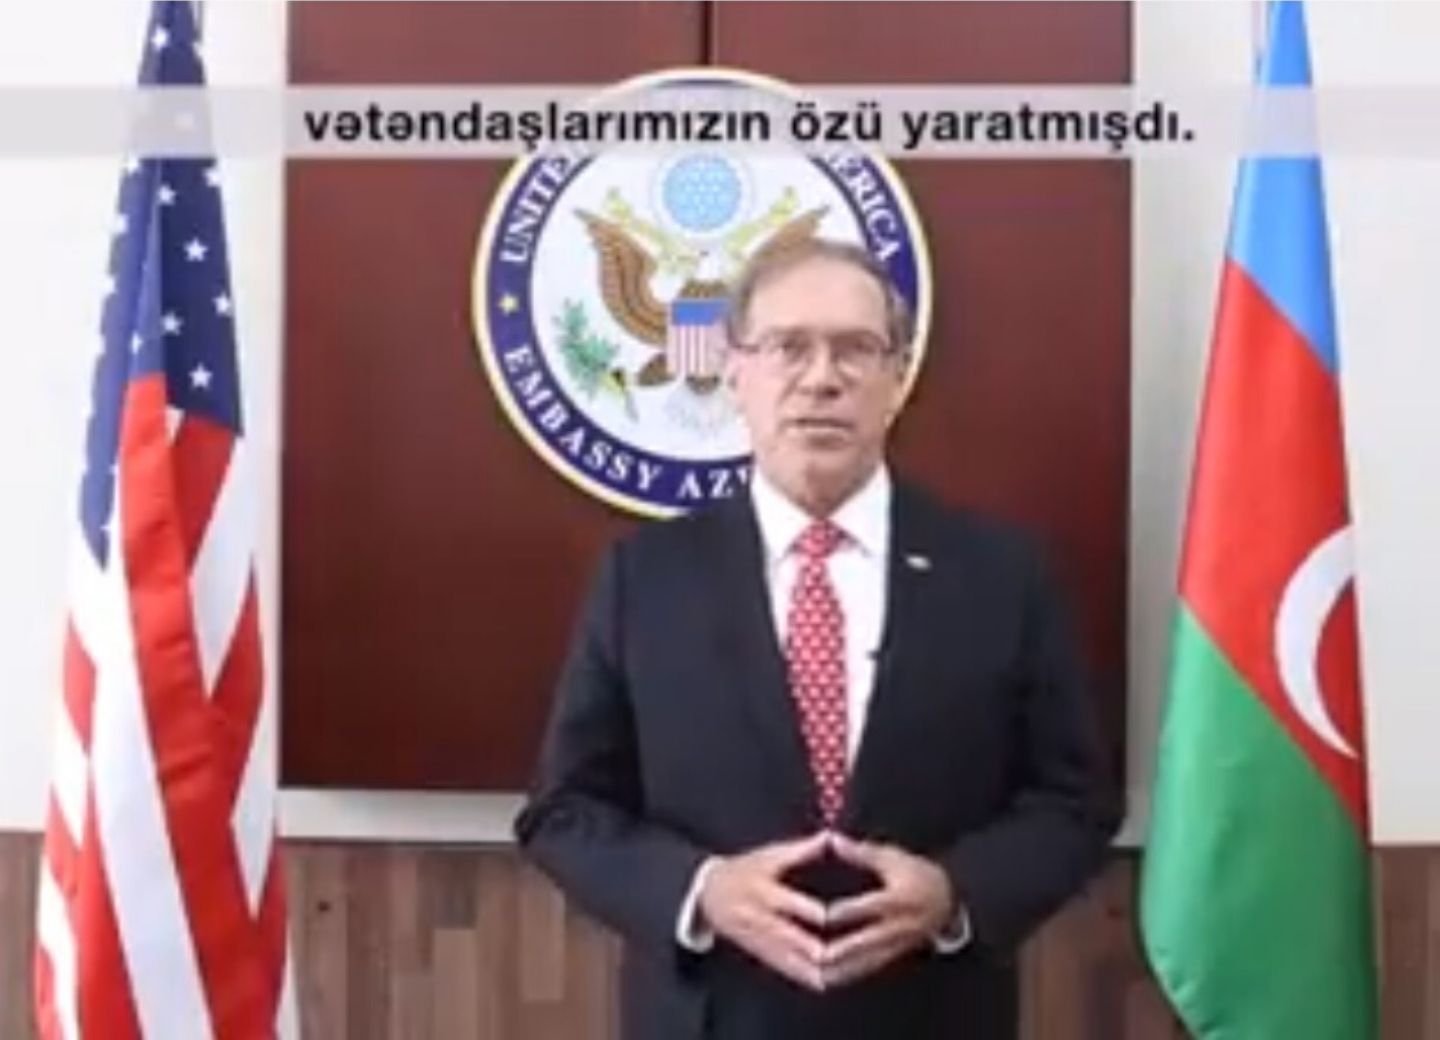 Посол США: «Мы гордимся поддержкой суверенитета и независимости Азербайджана» - ВИДЕО 